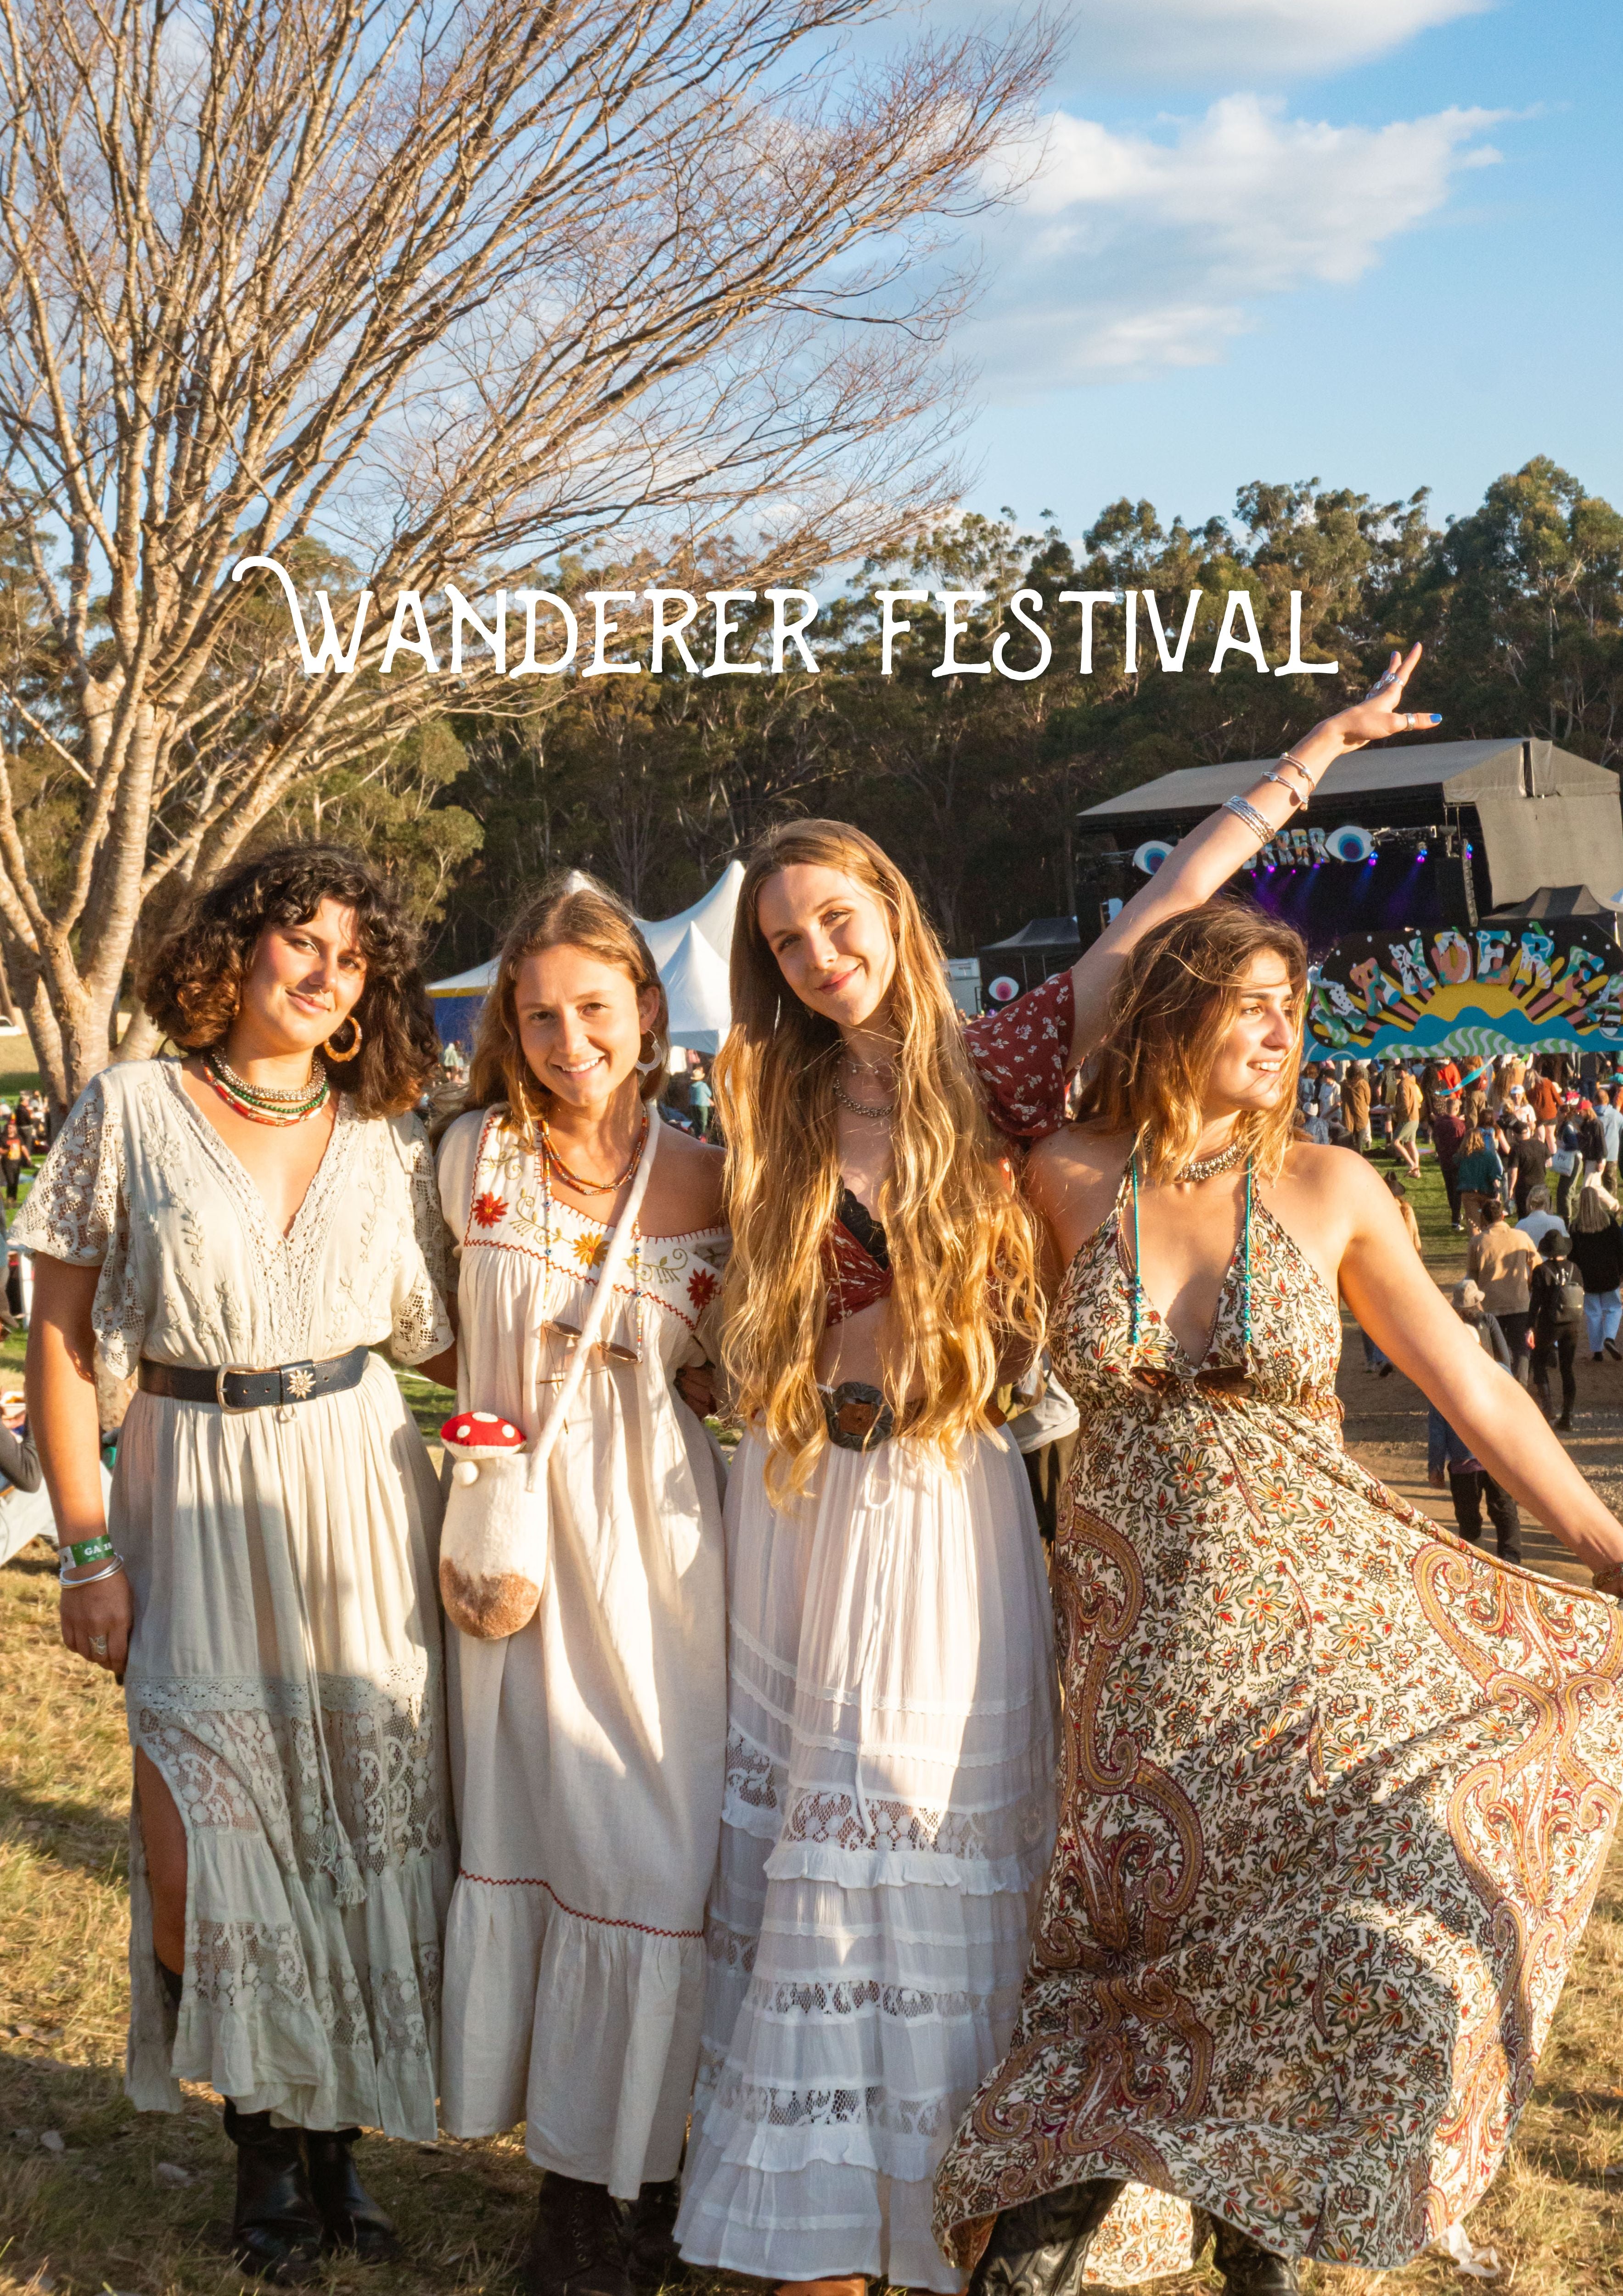 Wanderer Festival